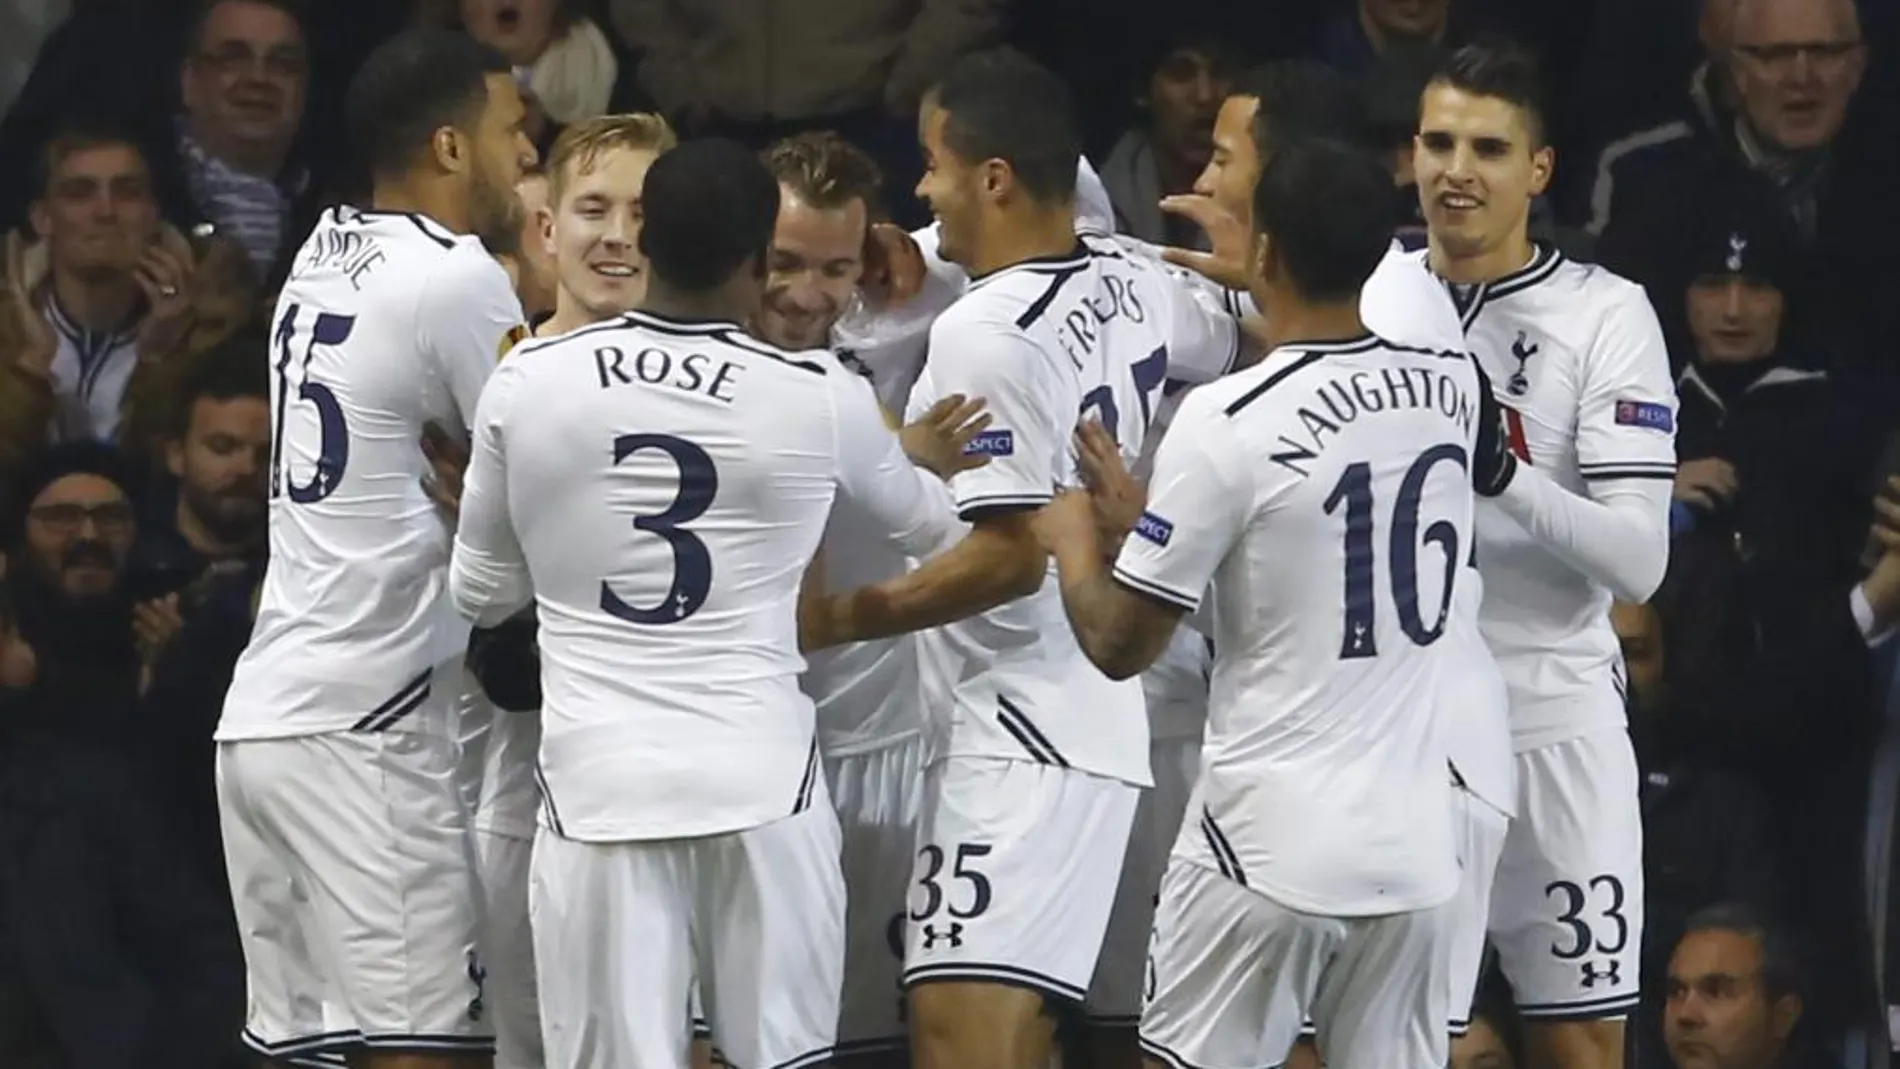 Soldado del Tottenham Hotspur celebra con sus compañeros de equipo tras anotar el primer gol ante Anji Makhachkala